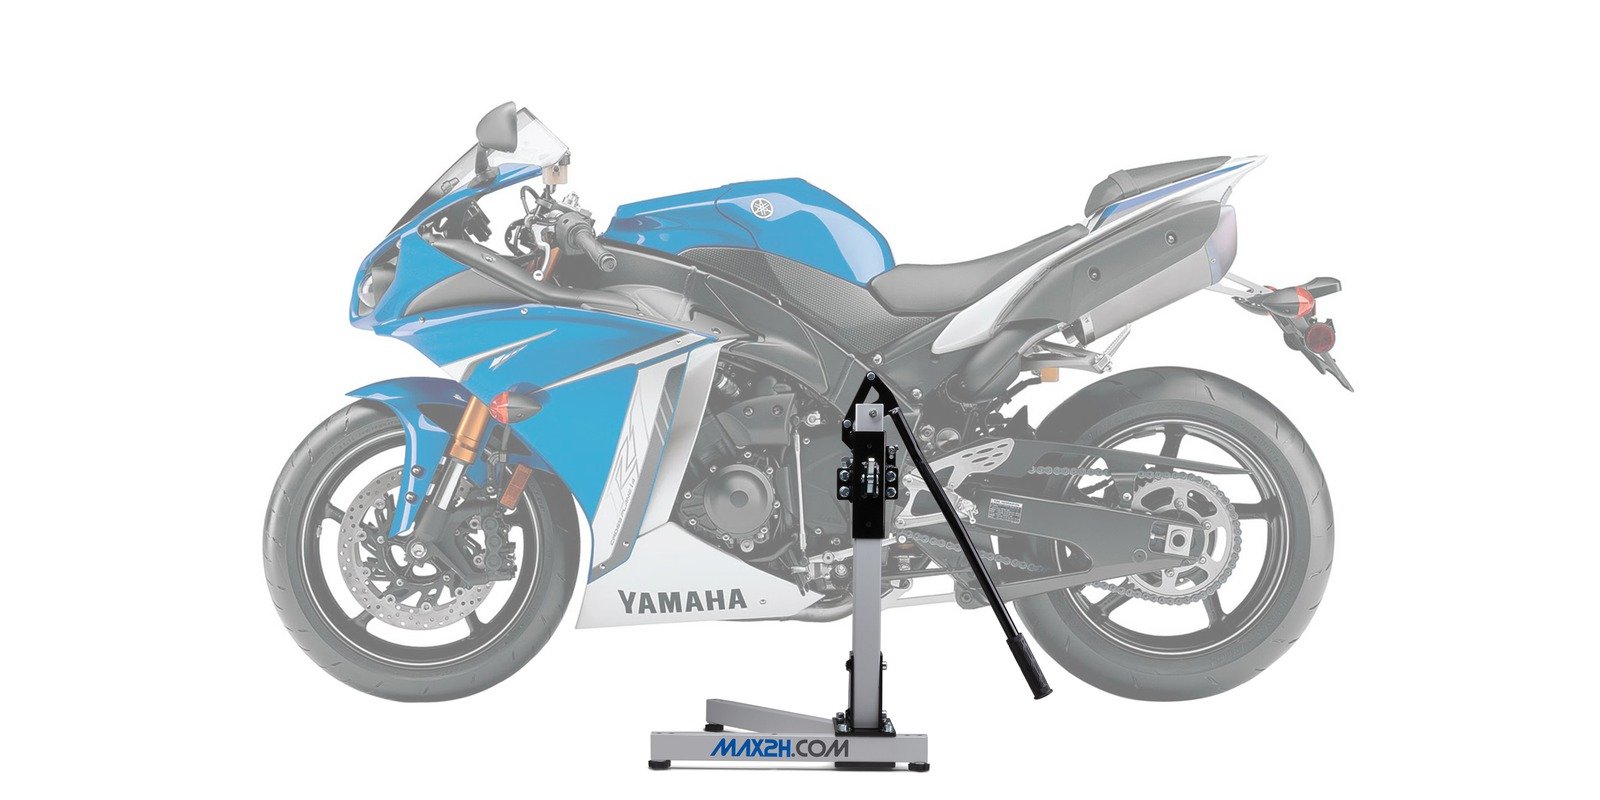 Obrázek produktu adaptér Yamaha R1 09->14, MAX2H MX-YAP0400